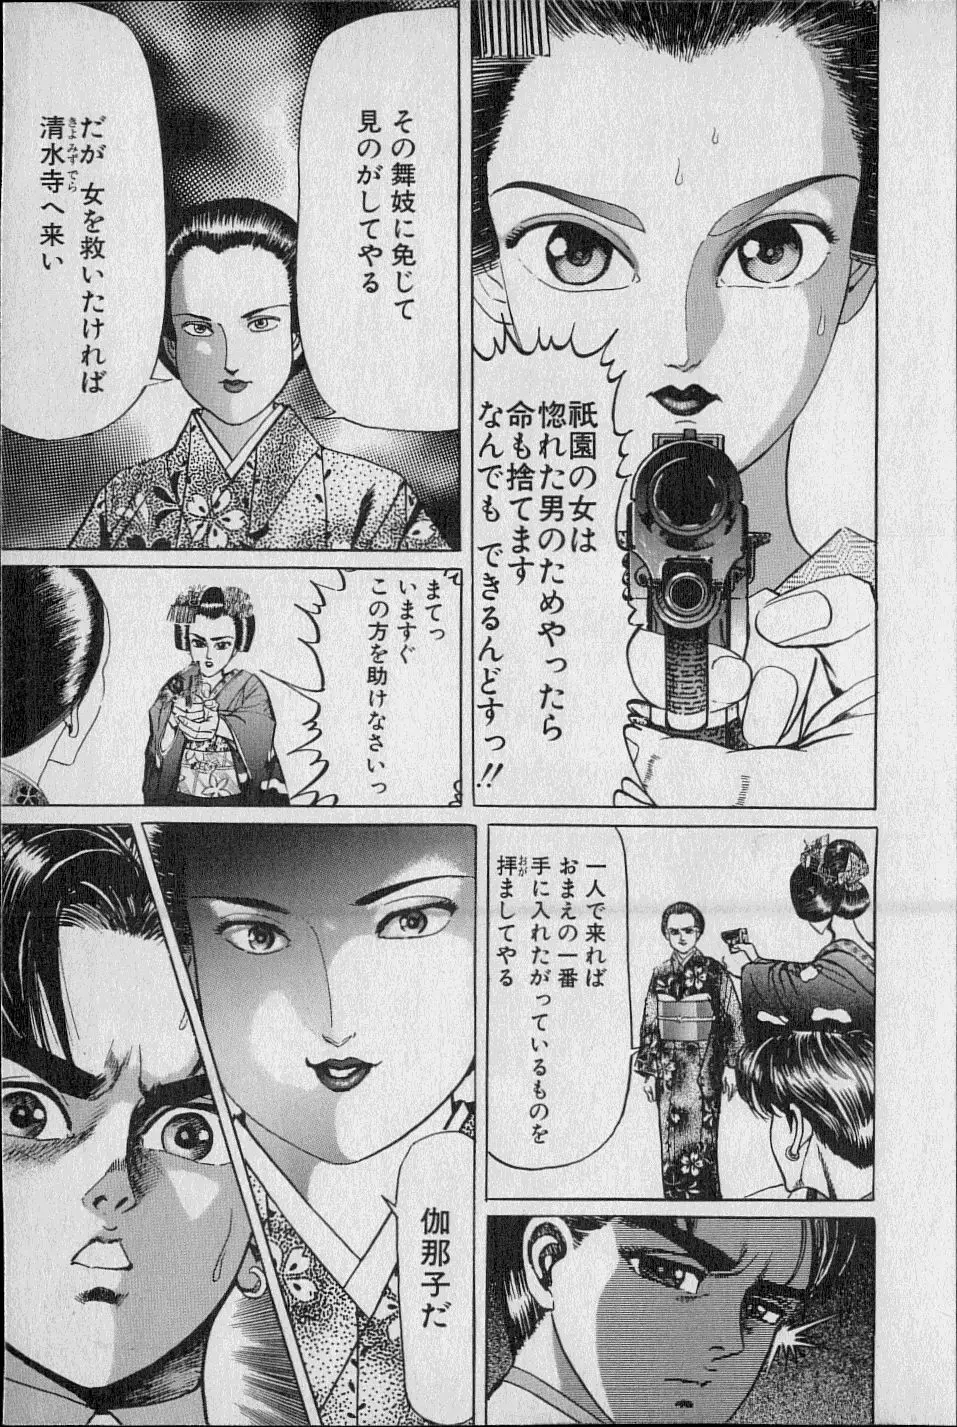 Kouryuu no Mimi Volume 02 46ページ